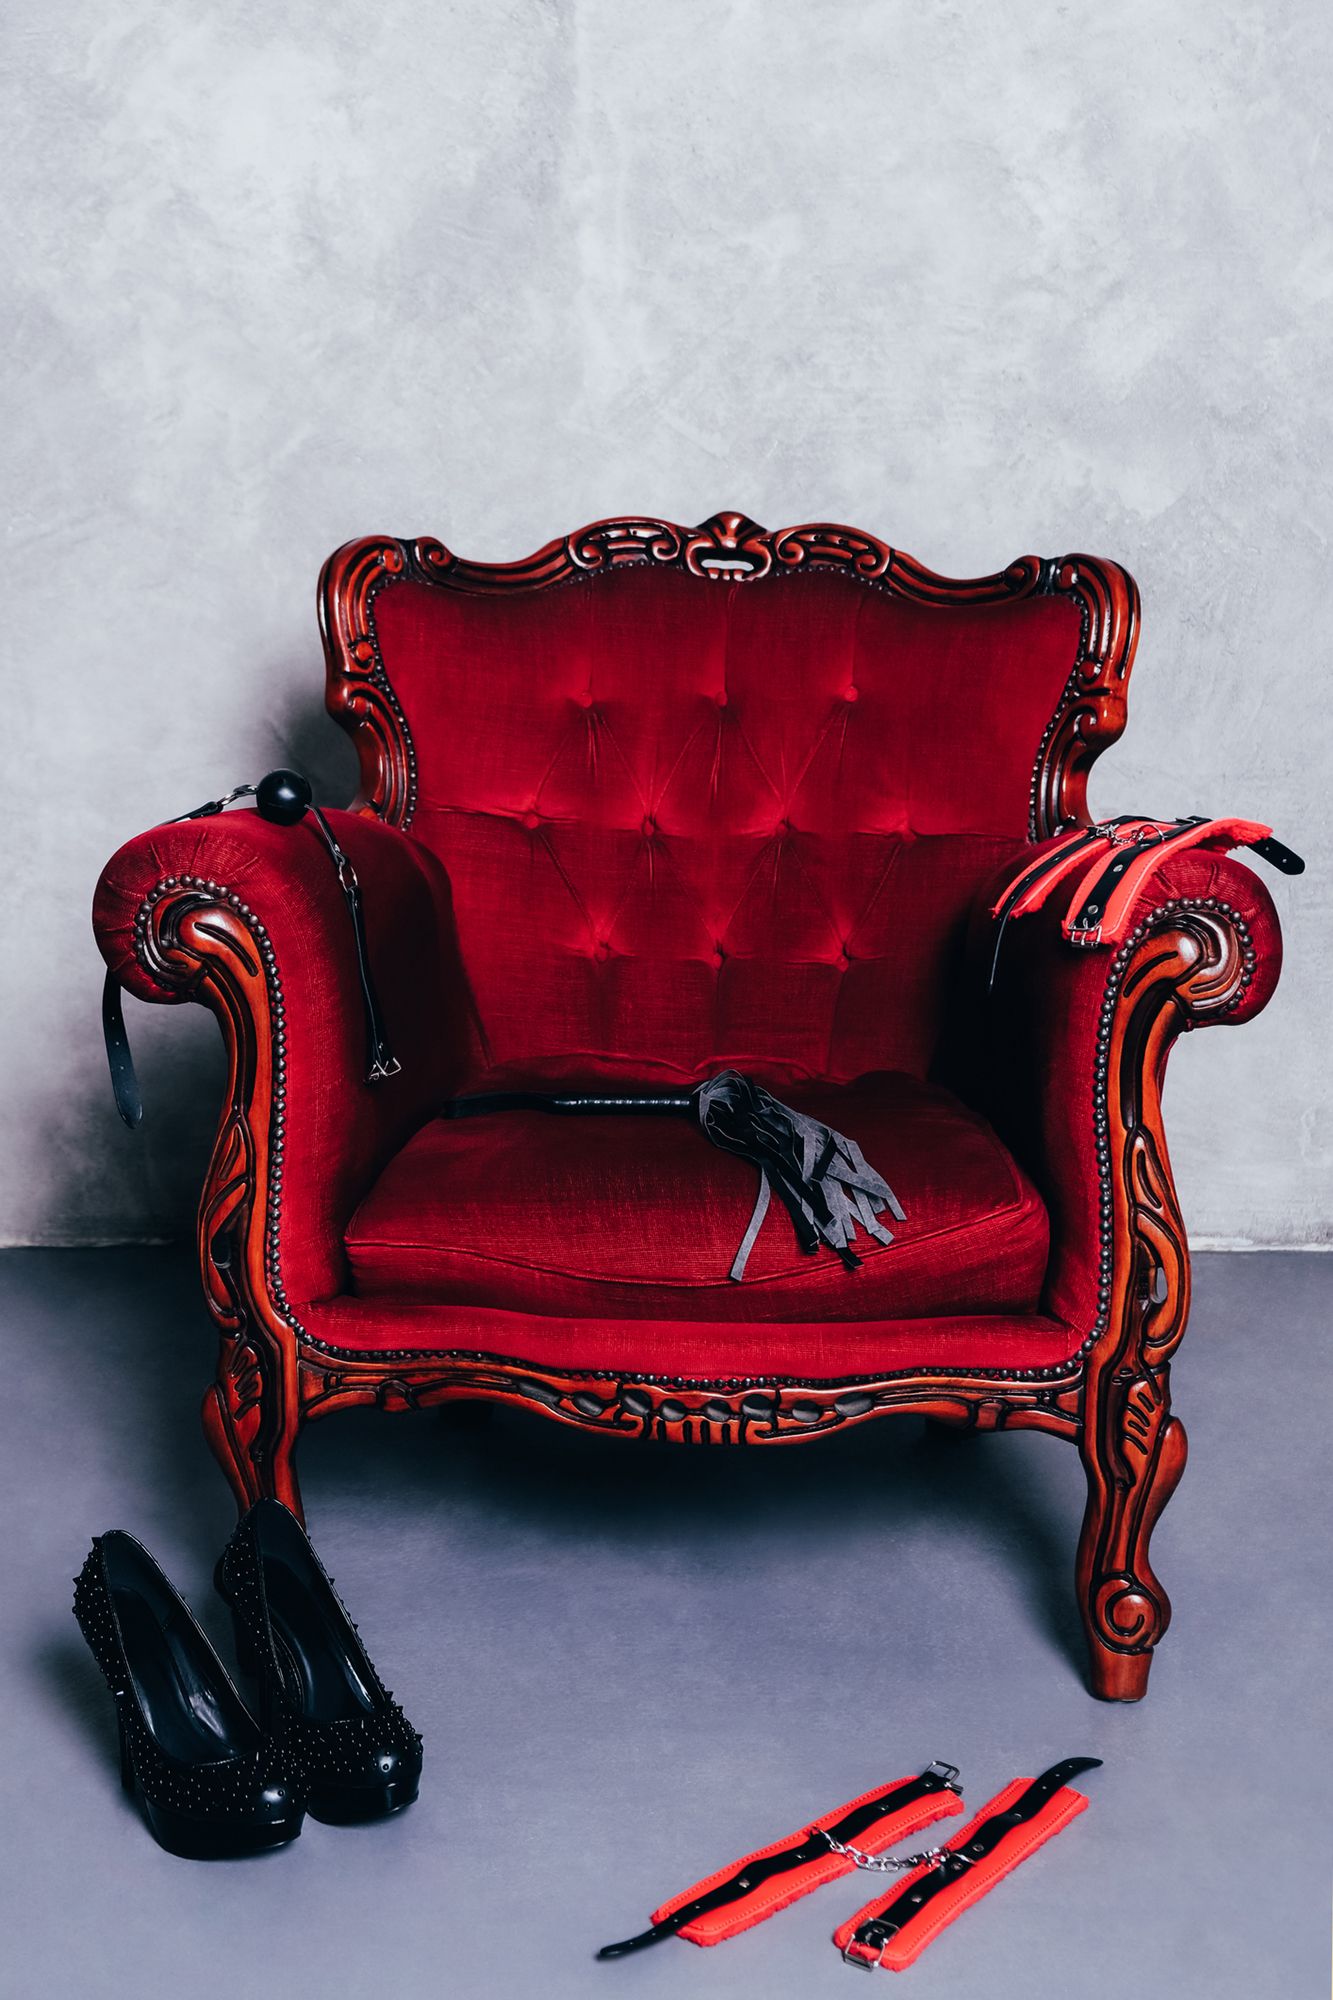 Ein roter Sessel mit High Heels und Bondage Accessoires davor